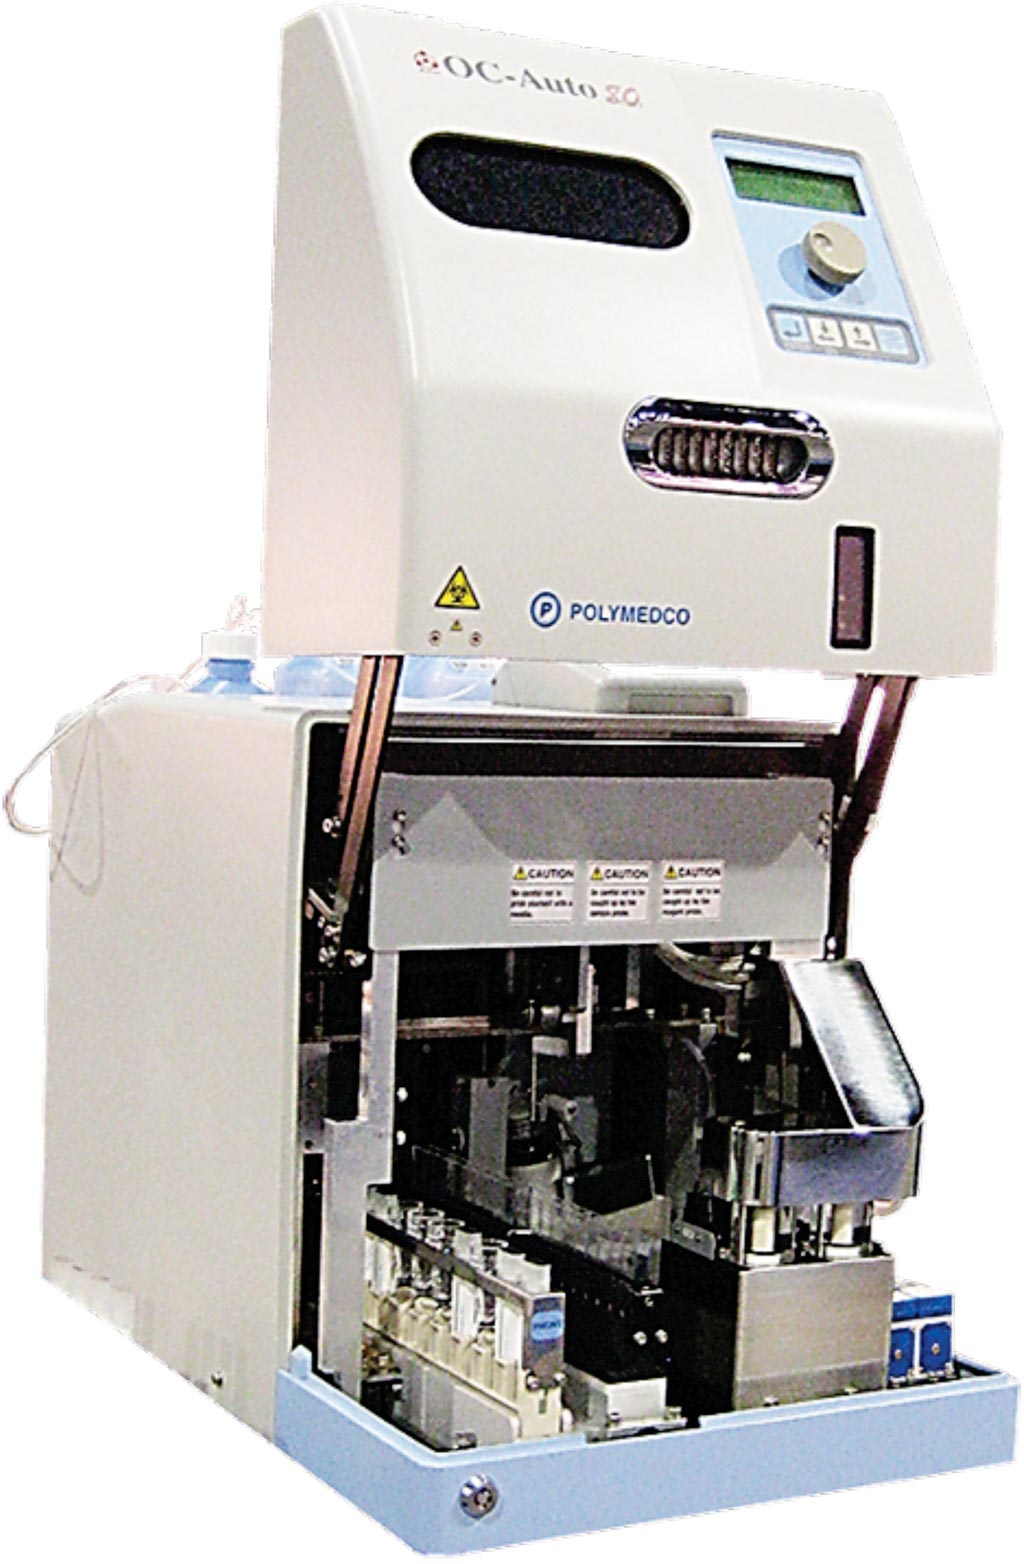 Image: The Polymedco OC auto 80 analyzer (Photo courtesy of Polymedco).